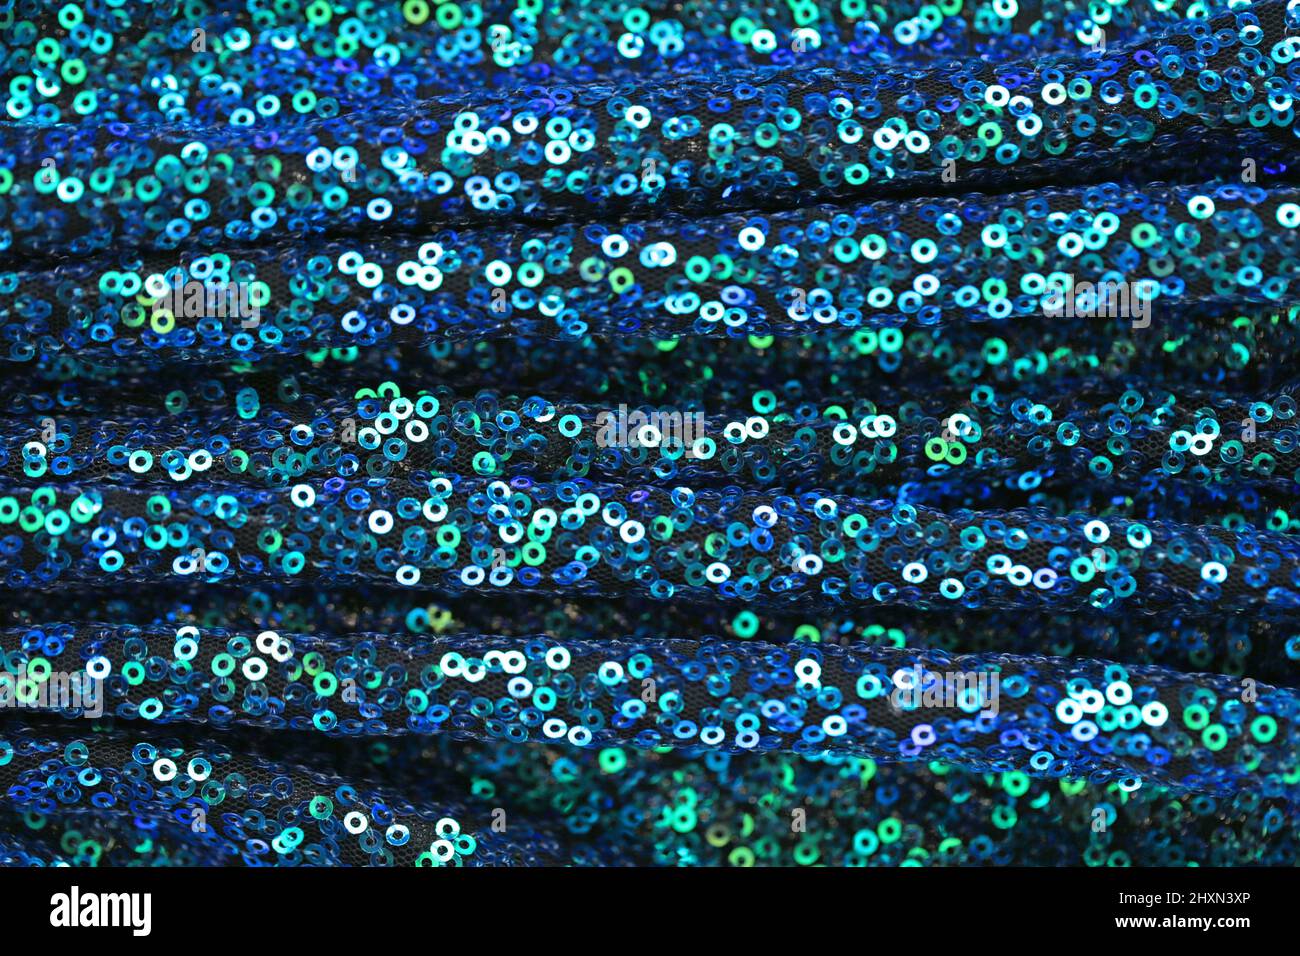 Pailletten Hintergrund.Stoff mit schimmernden Pailletten.Grün und blau Pailletten Hintergrund.glänzende Oberfläche in blauen und grünen Tönen. Schillernde Pailletten Textur. Stockfoto